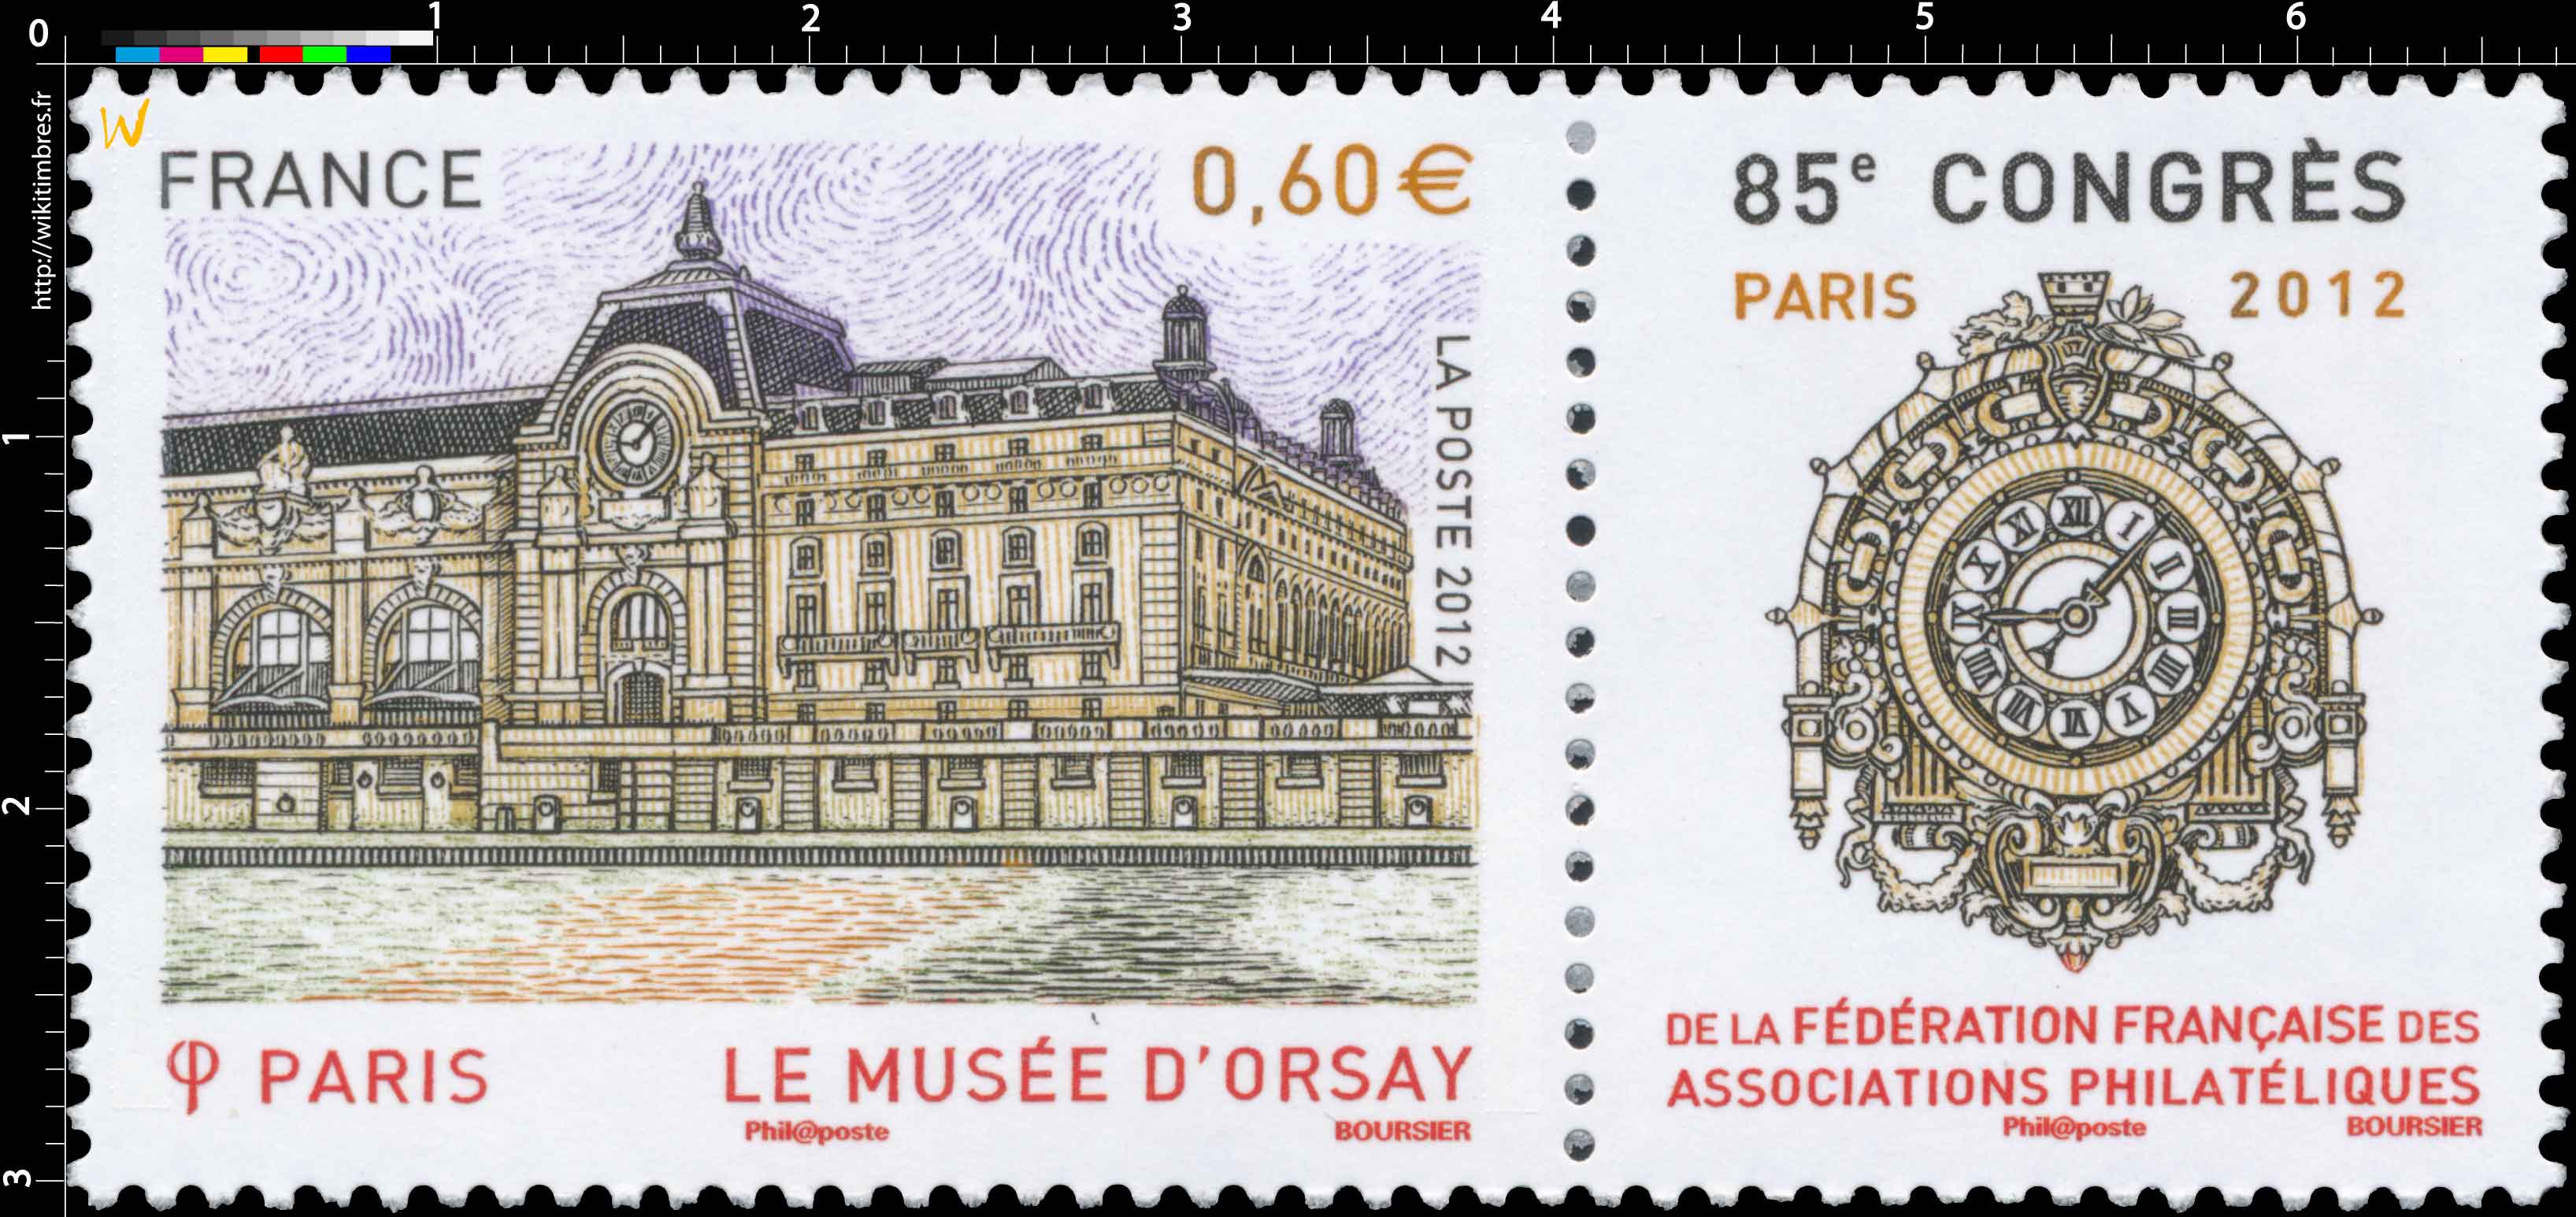 2012 LE MUSÉE D’ORSAY 85e congrès de la Fédération Française des Associations Philatéliques